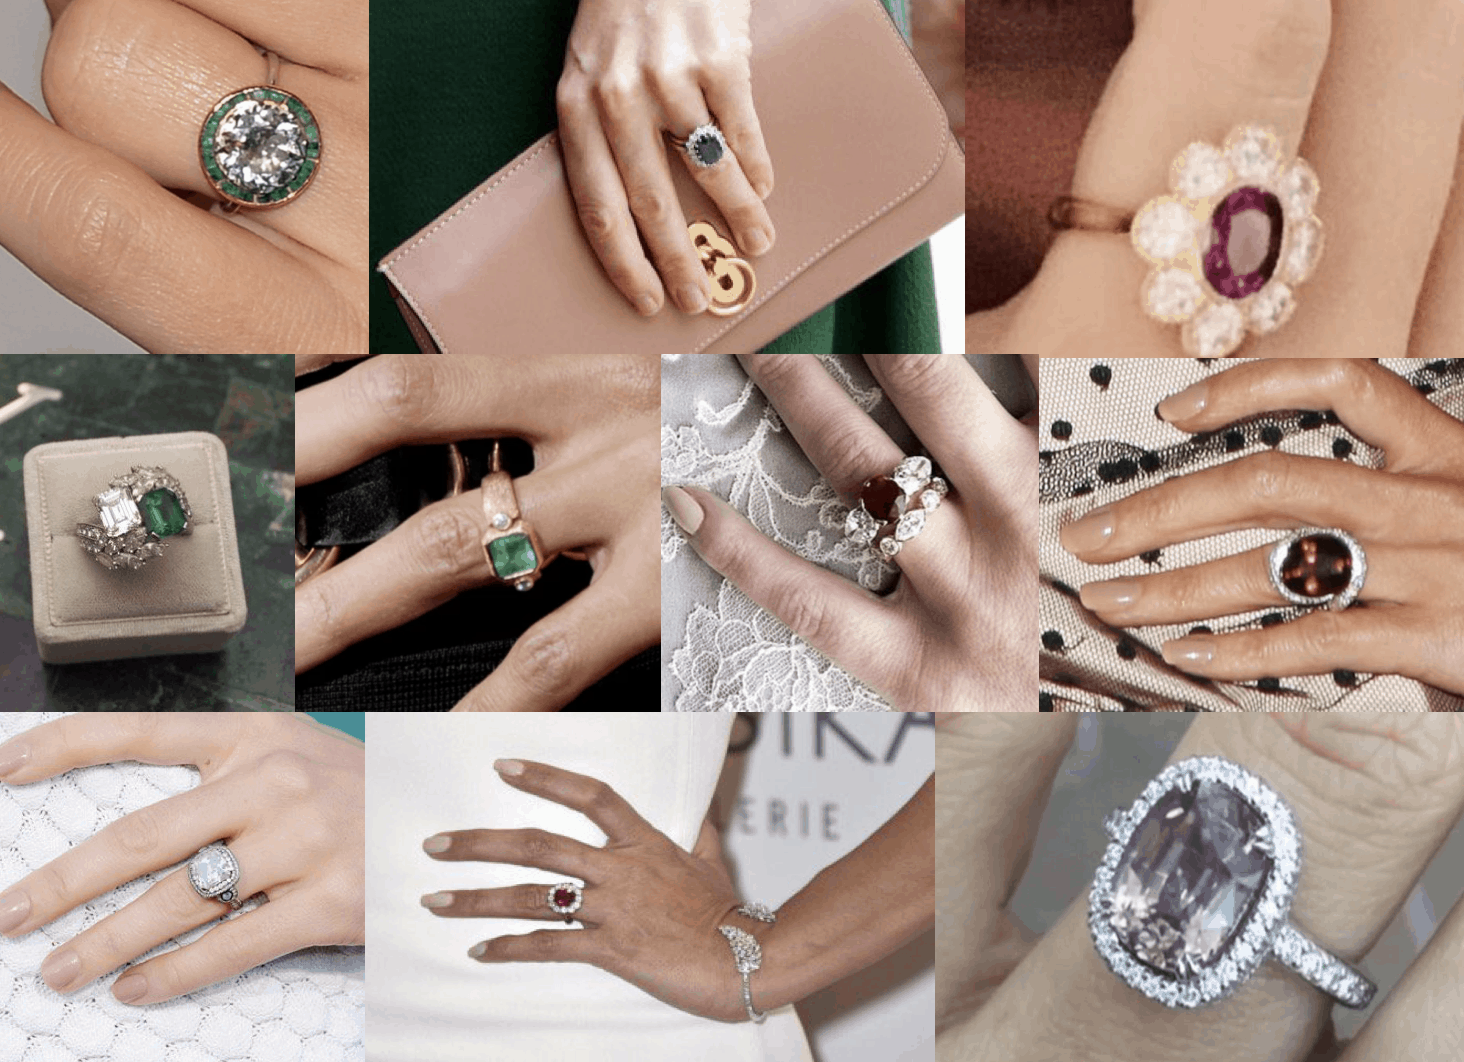 Pavé Diamond Solitaire Engagement Ring Set | Ken & Dana Design